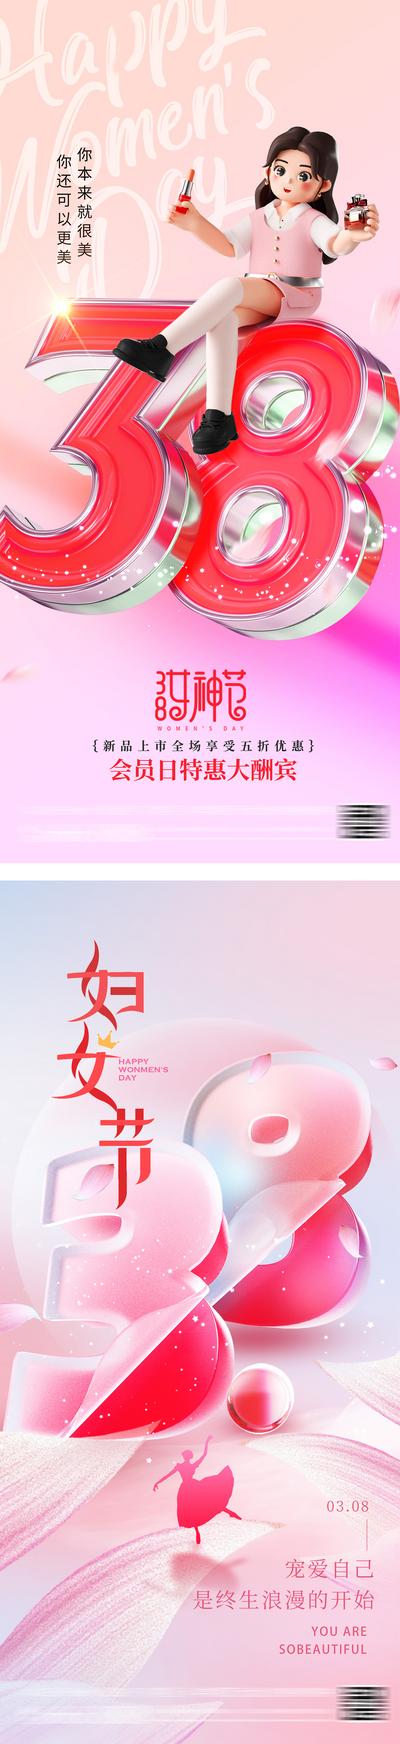 南门网 38女神节妇女节海报